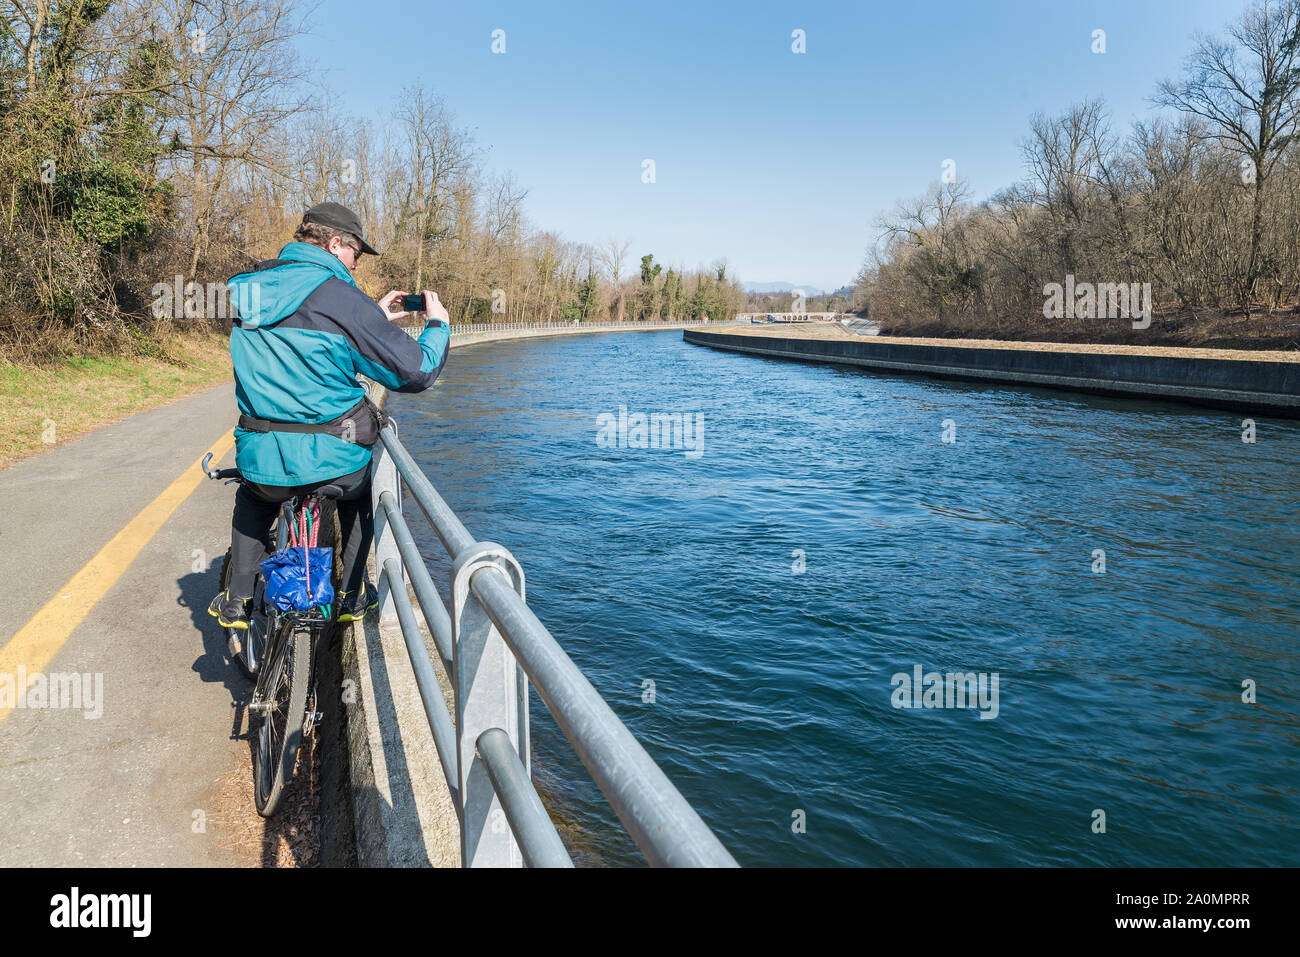 L'homme sur le vélo est de prendre une photo. Concept de vie actif et de voyage Banque D'Images